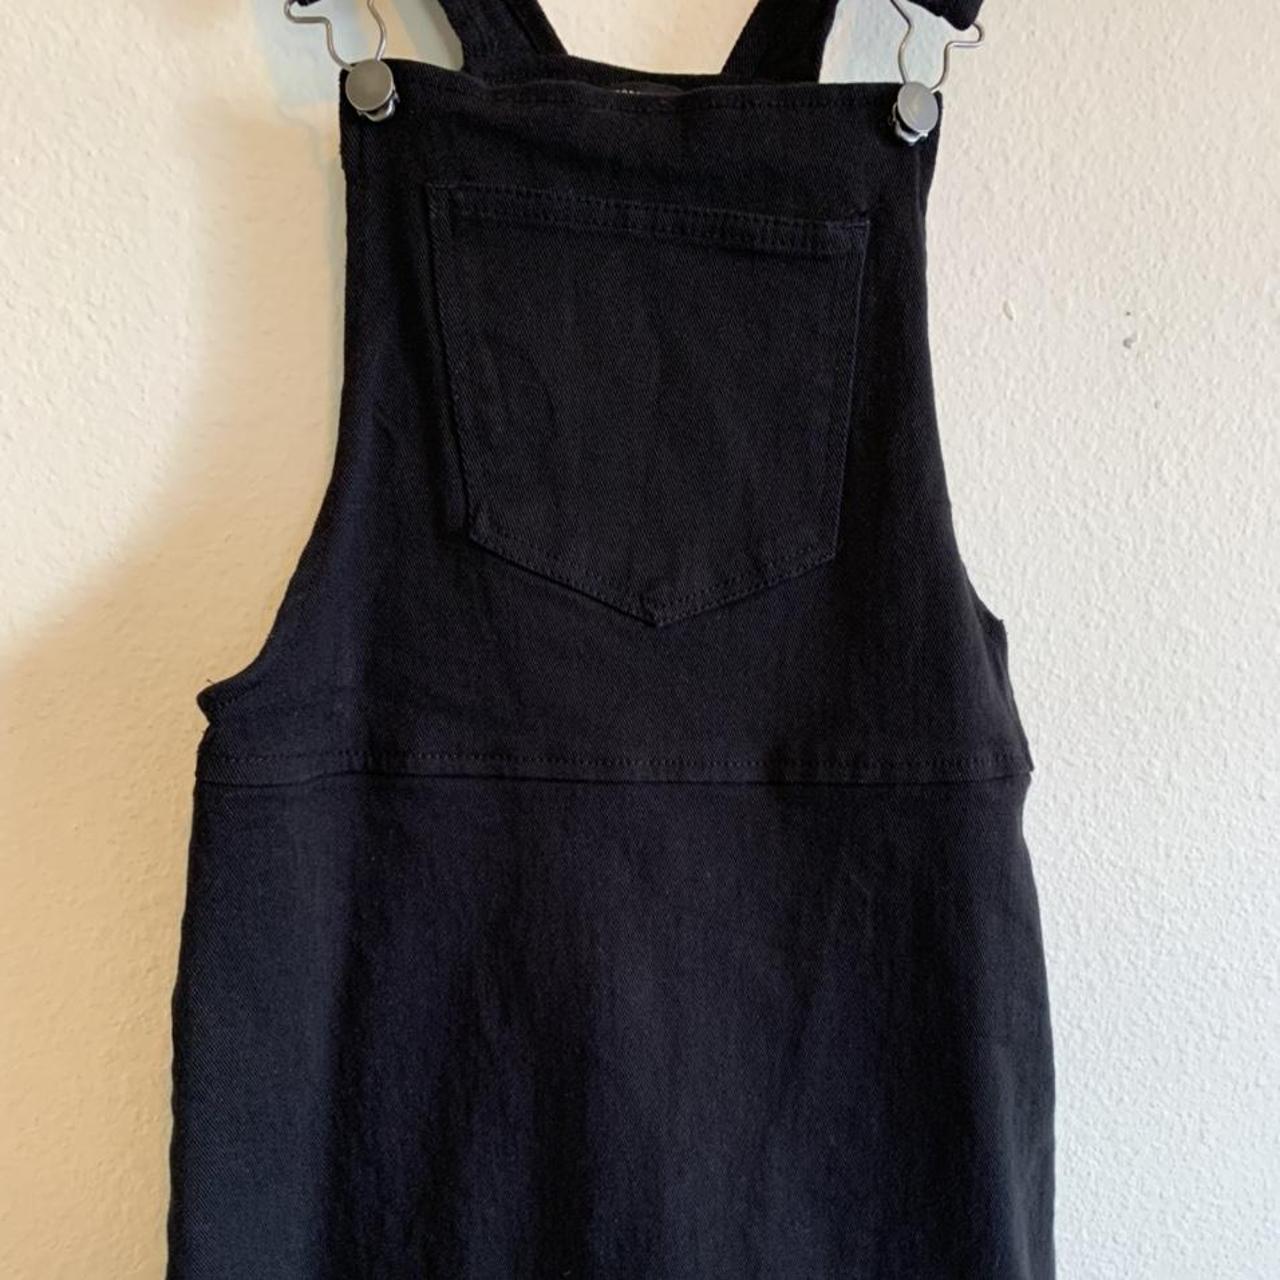 Medium Forever 21 black overalls w/ skirt... - Depop